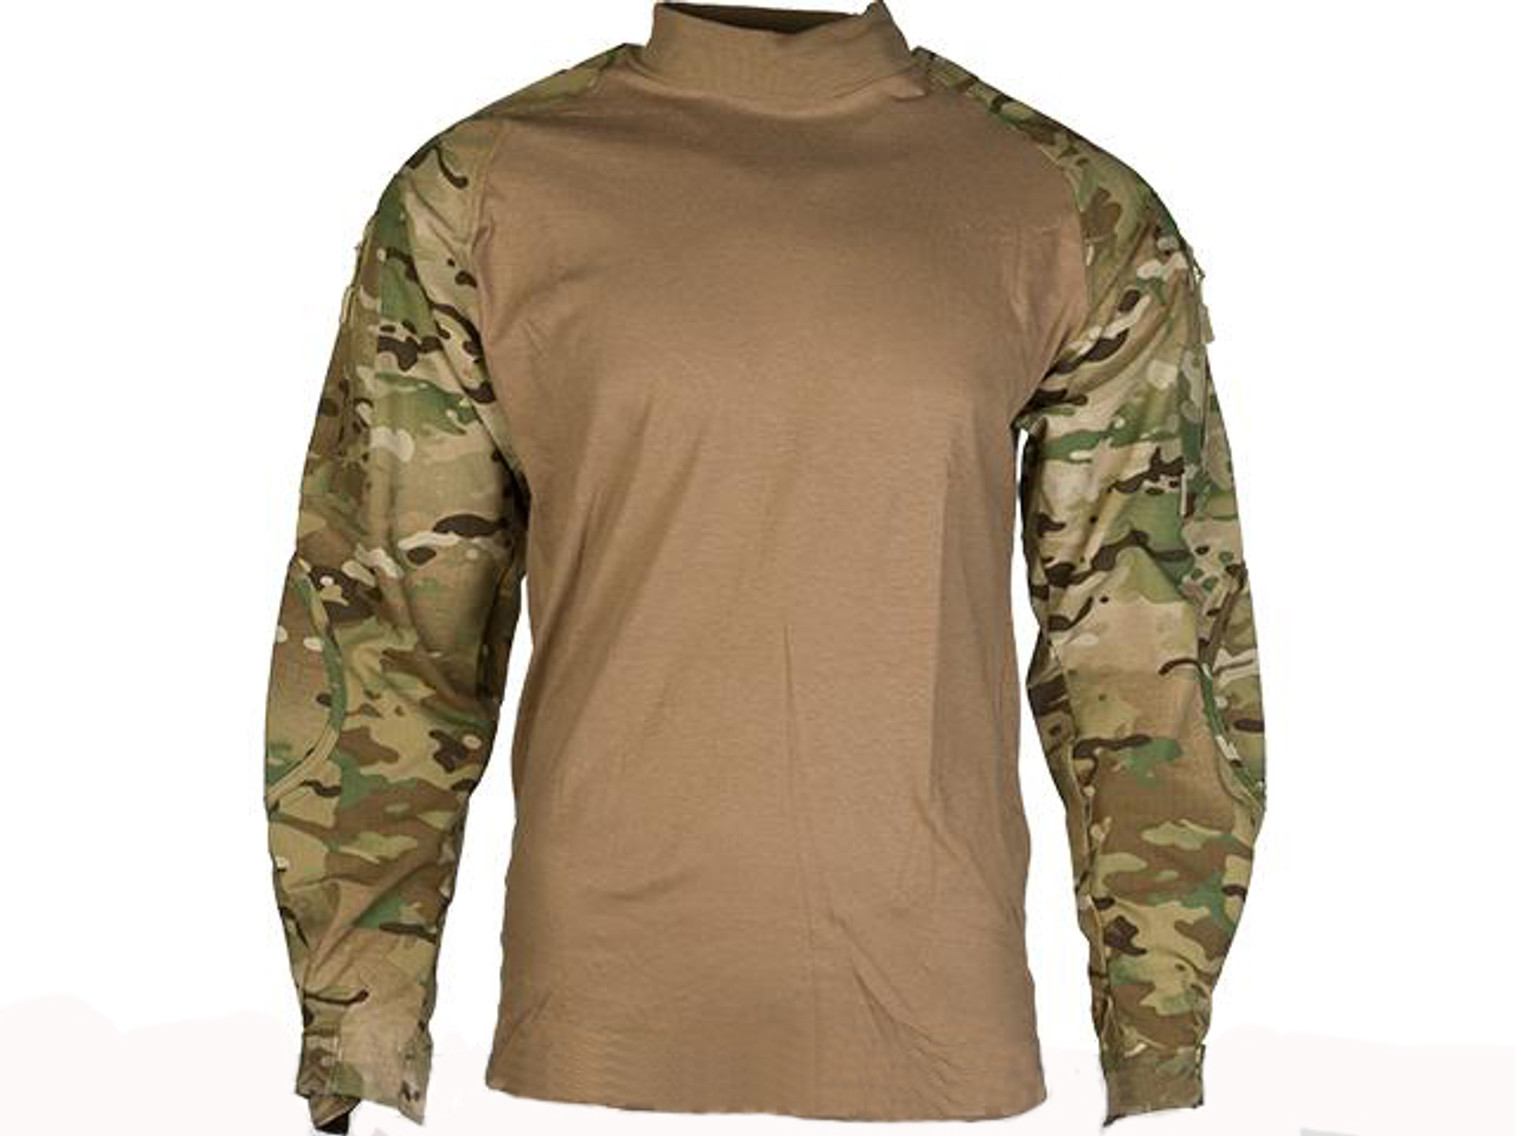 Tru-Spec TRU Xtreme Combat Shirt - Multicam (Size: Small)